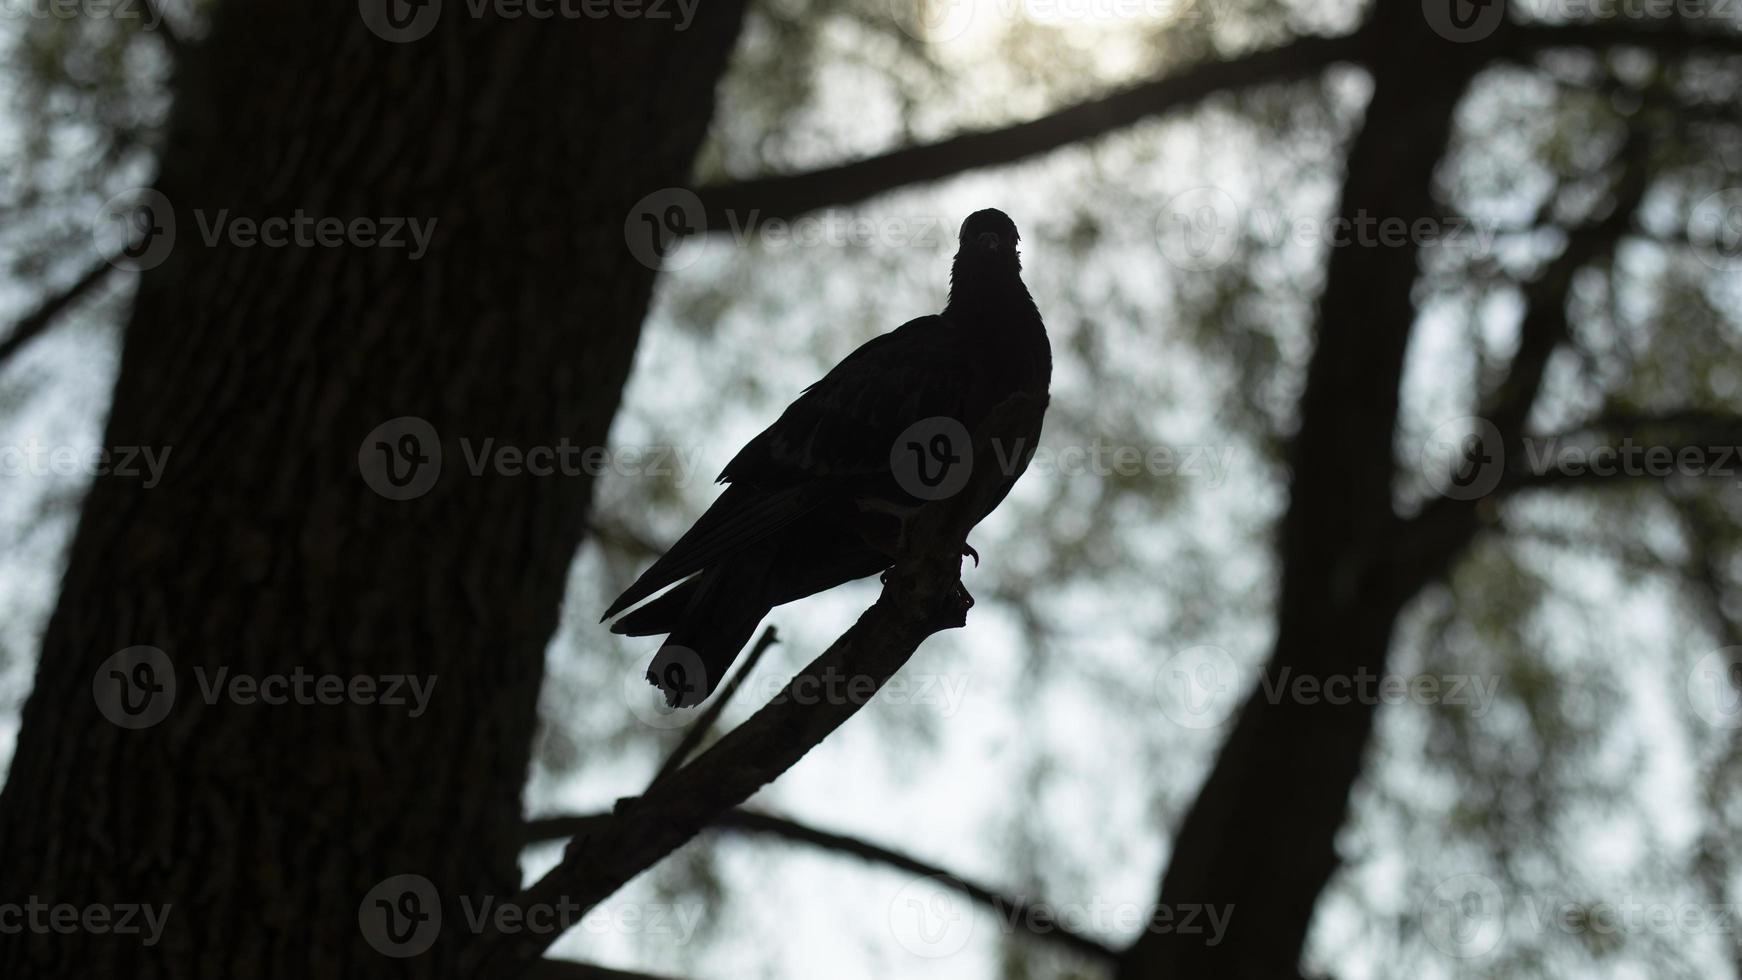 Taube auf Ast. Silhouette der Taube auf dem Baum. ein Vogel im Sommer. foto